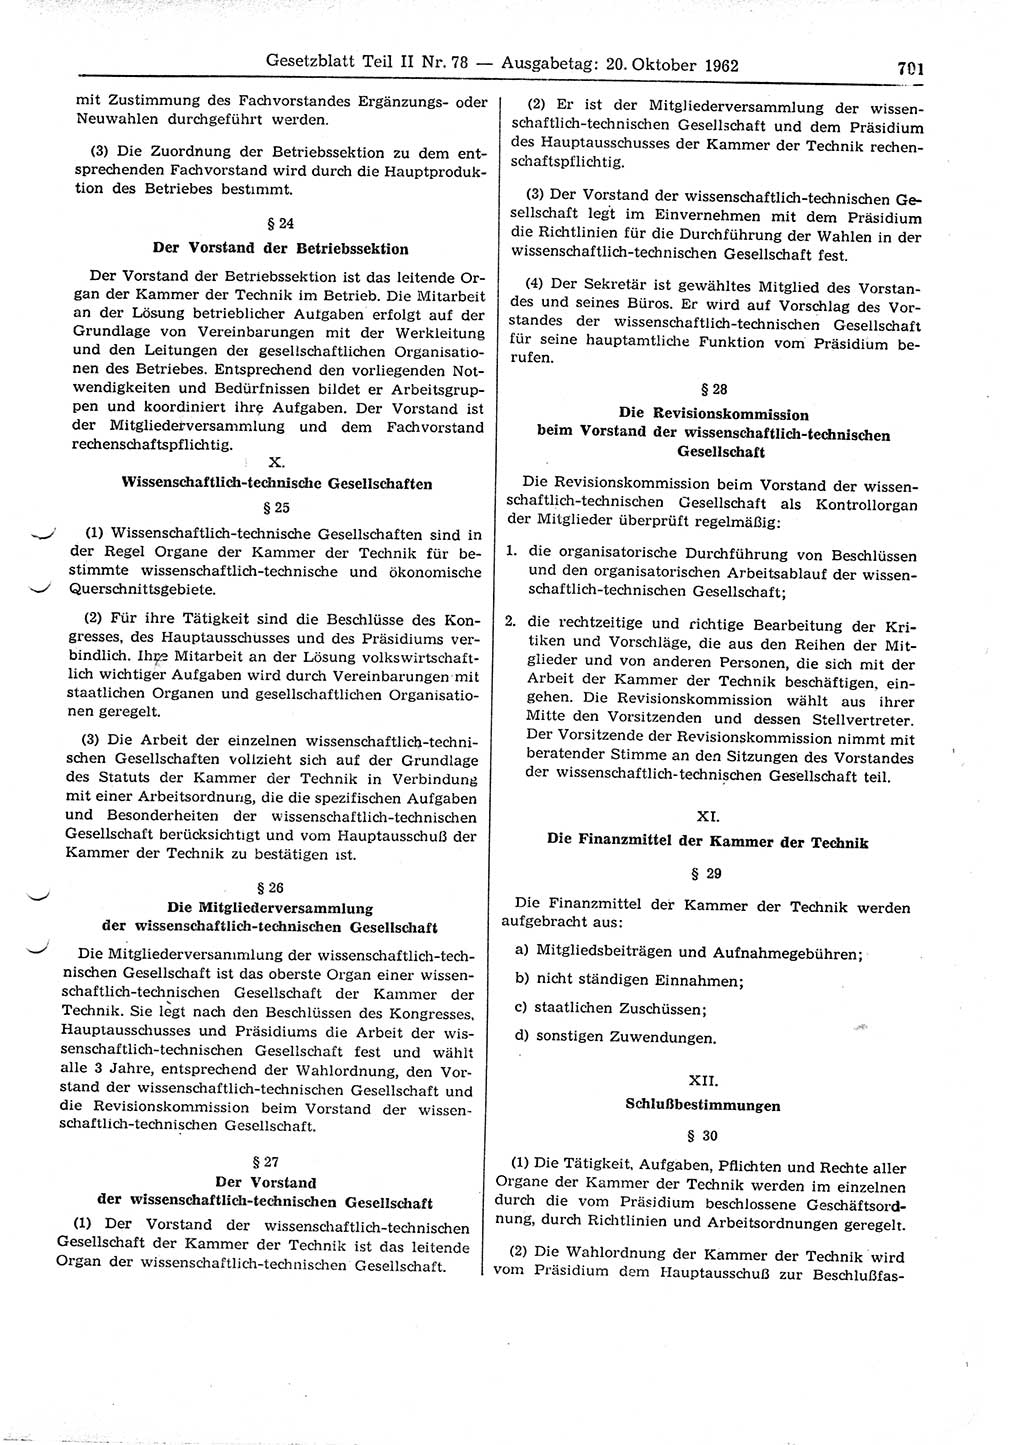 Gesetzblatt (GBl.) der Deutschen Demokratischen Republik (DDR) Teil ⅠⅠ 1962, Seite 701 (GBl. DDR ⅠⅠ 1962, S. 701)